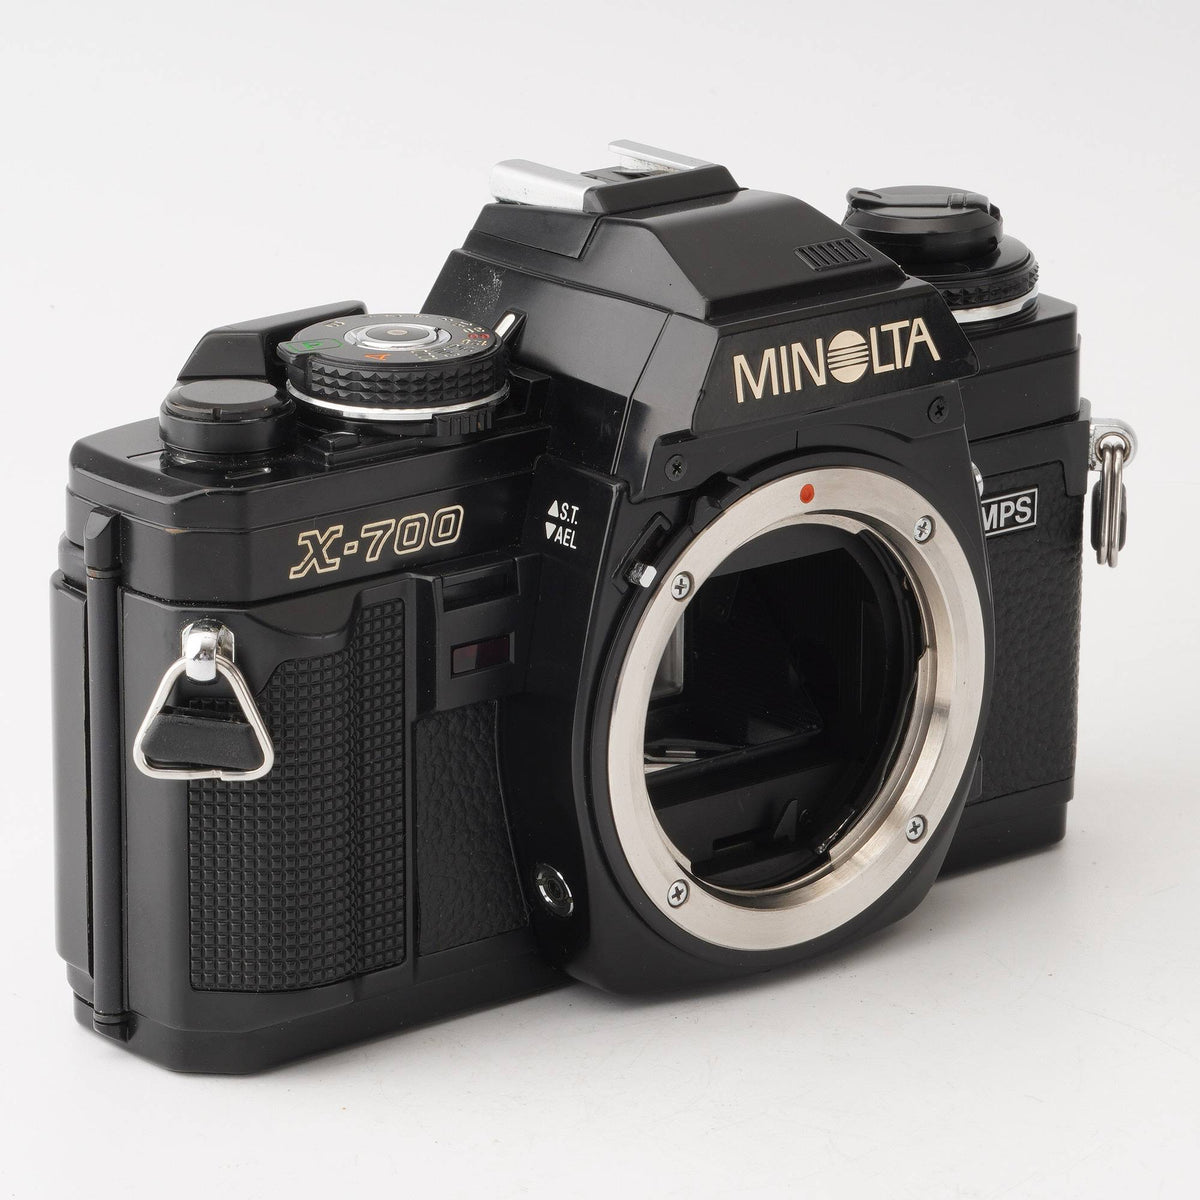 ミノルタ Minolta X-700 MPS / Minolta MD Zoom 35-70mm F3.5